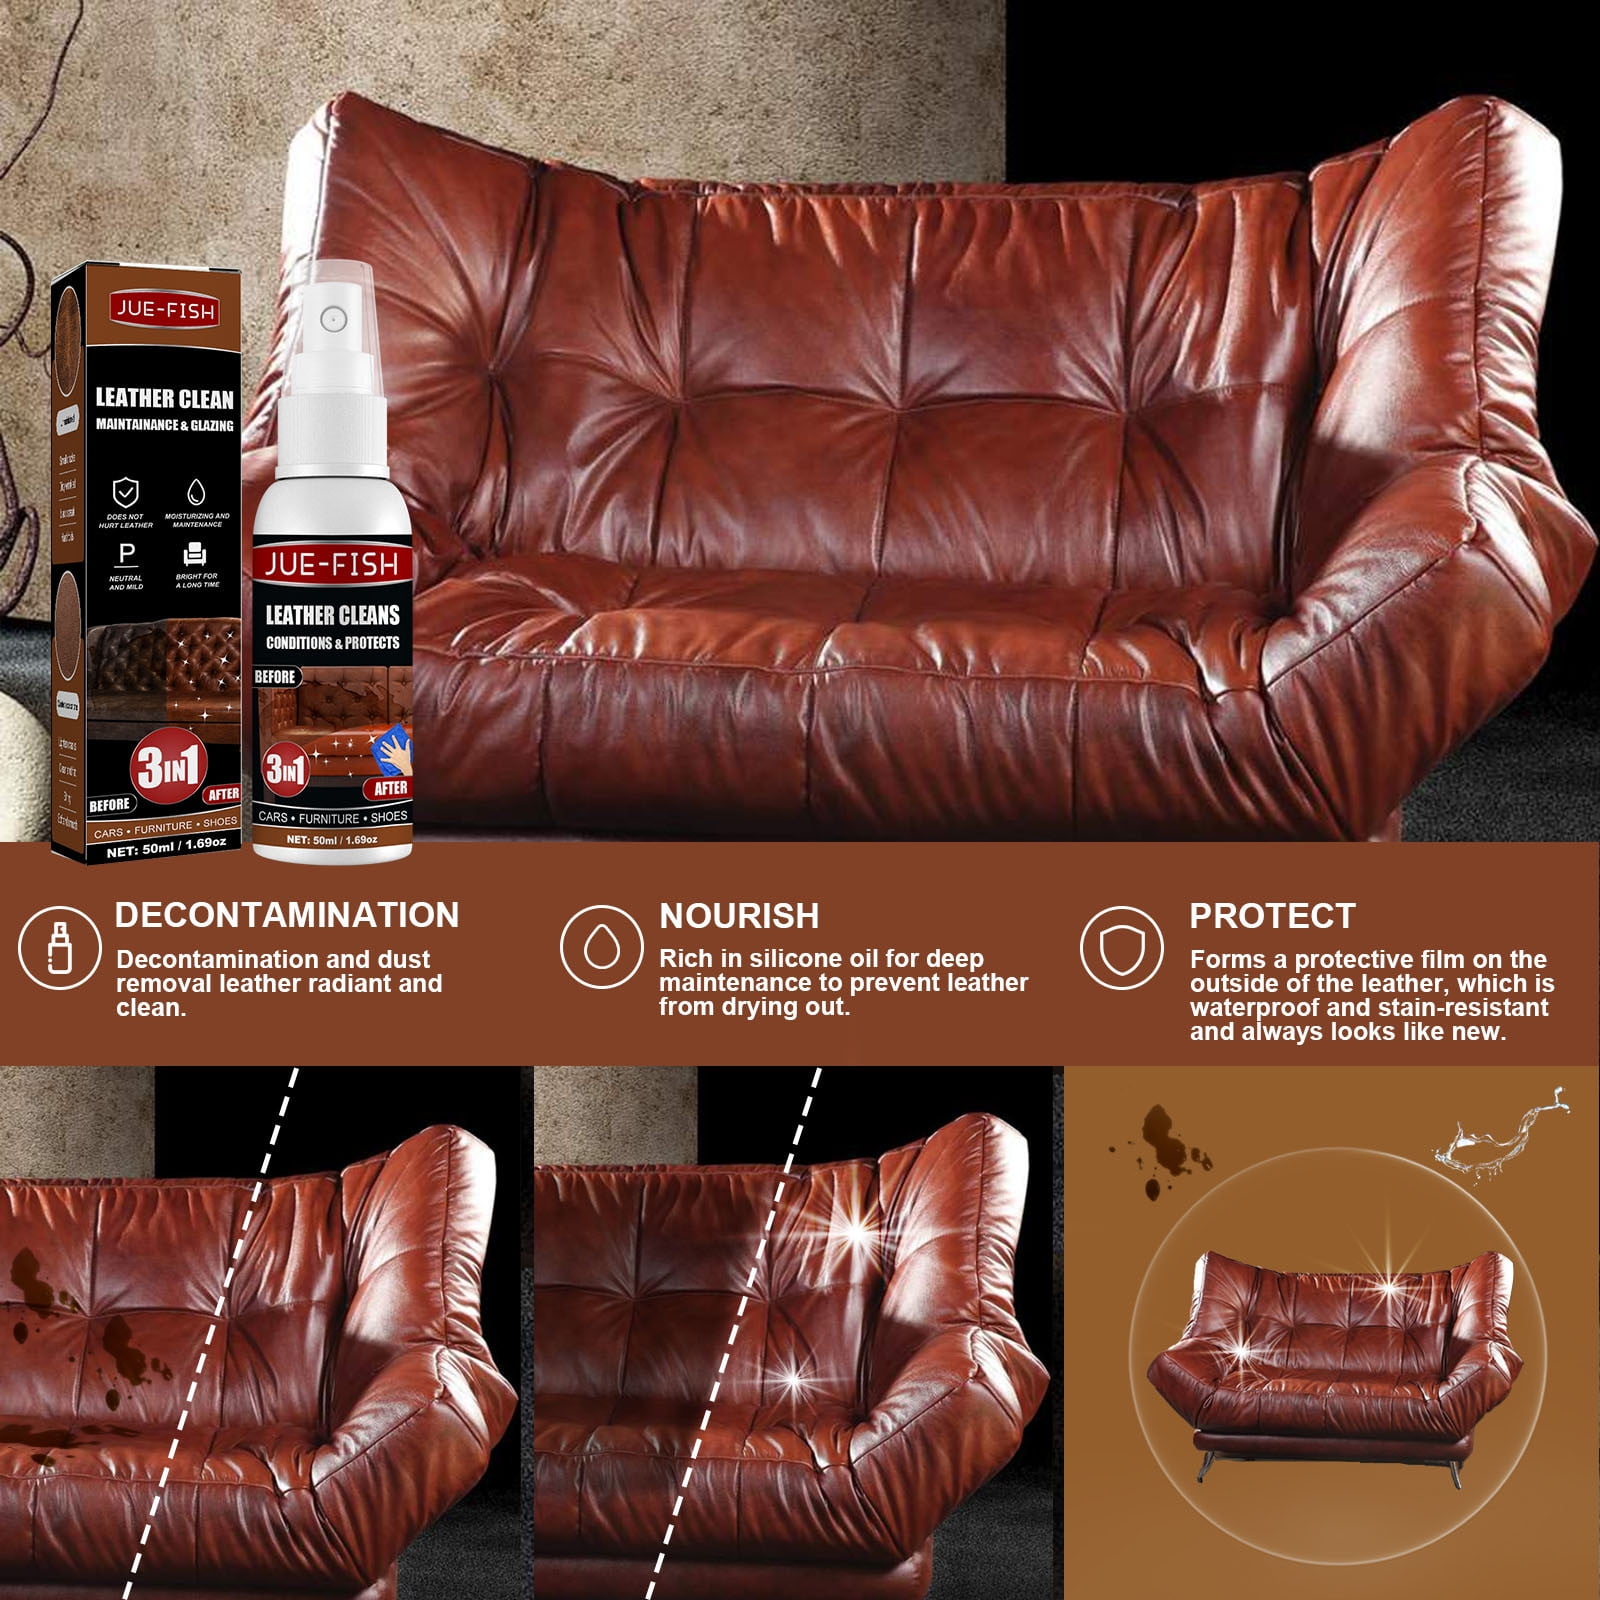 Carnauba Wax – Leather's Choice